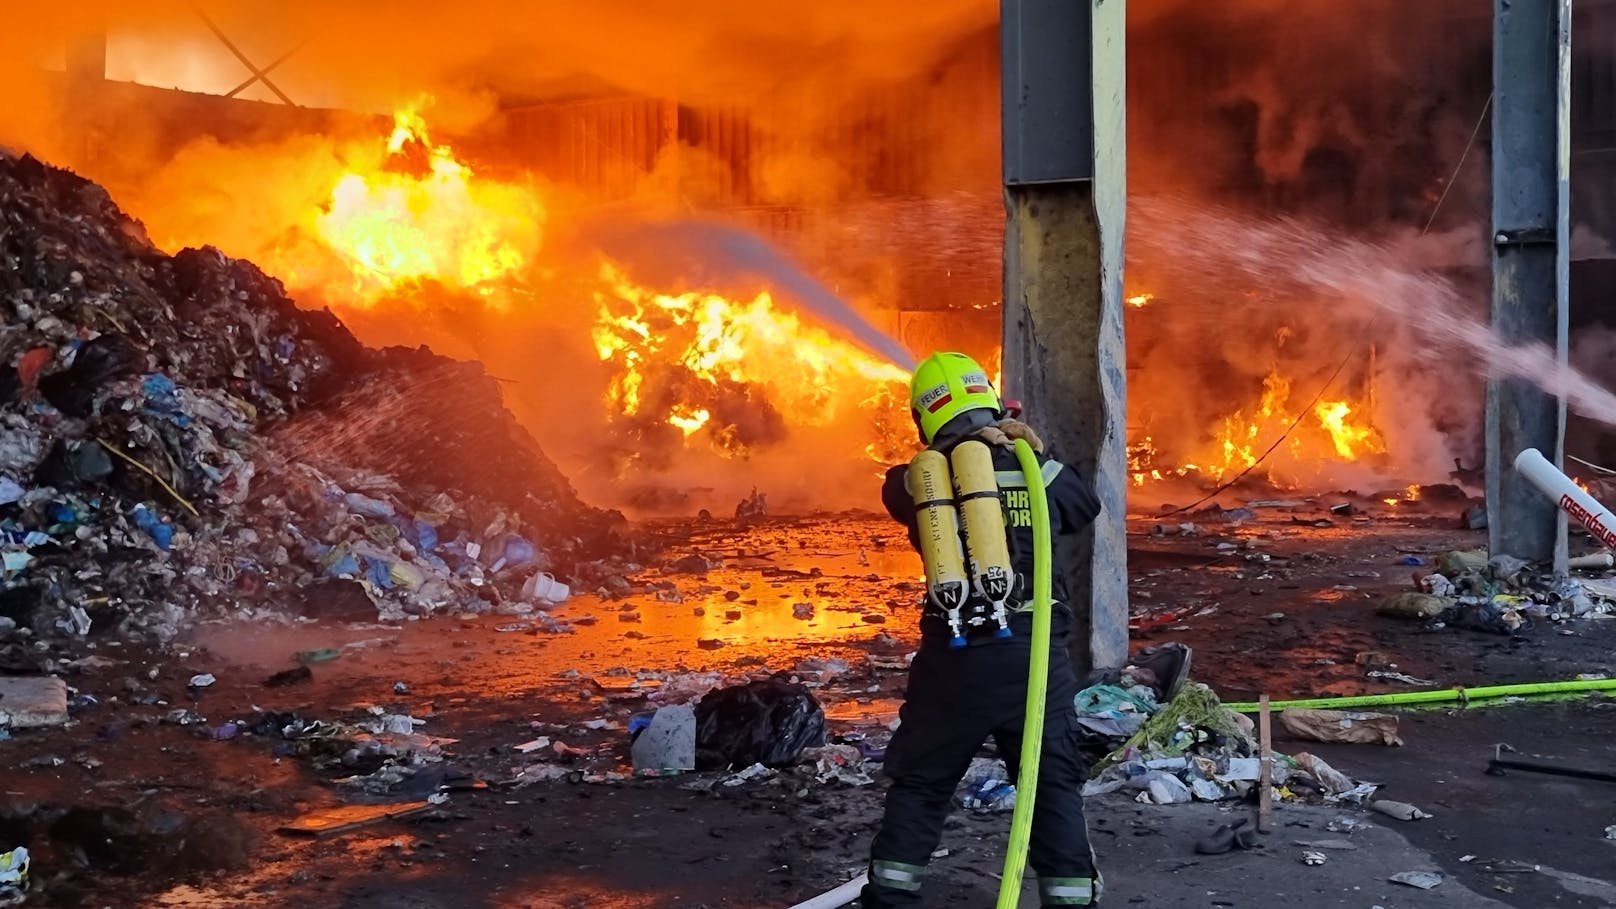 Am Gelände der Abfallwirtschaft war ein Feuer ausgebrochen